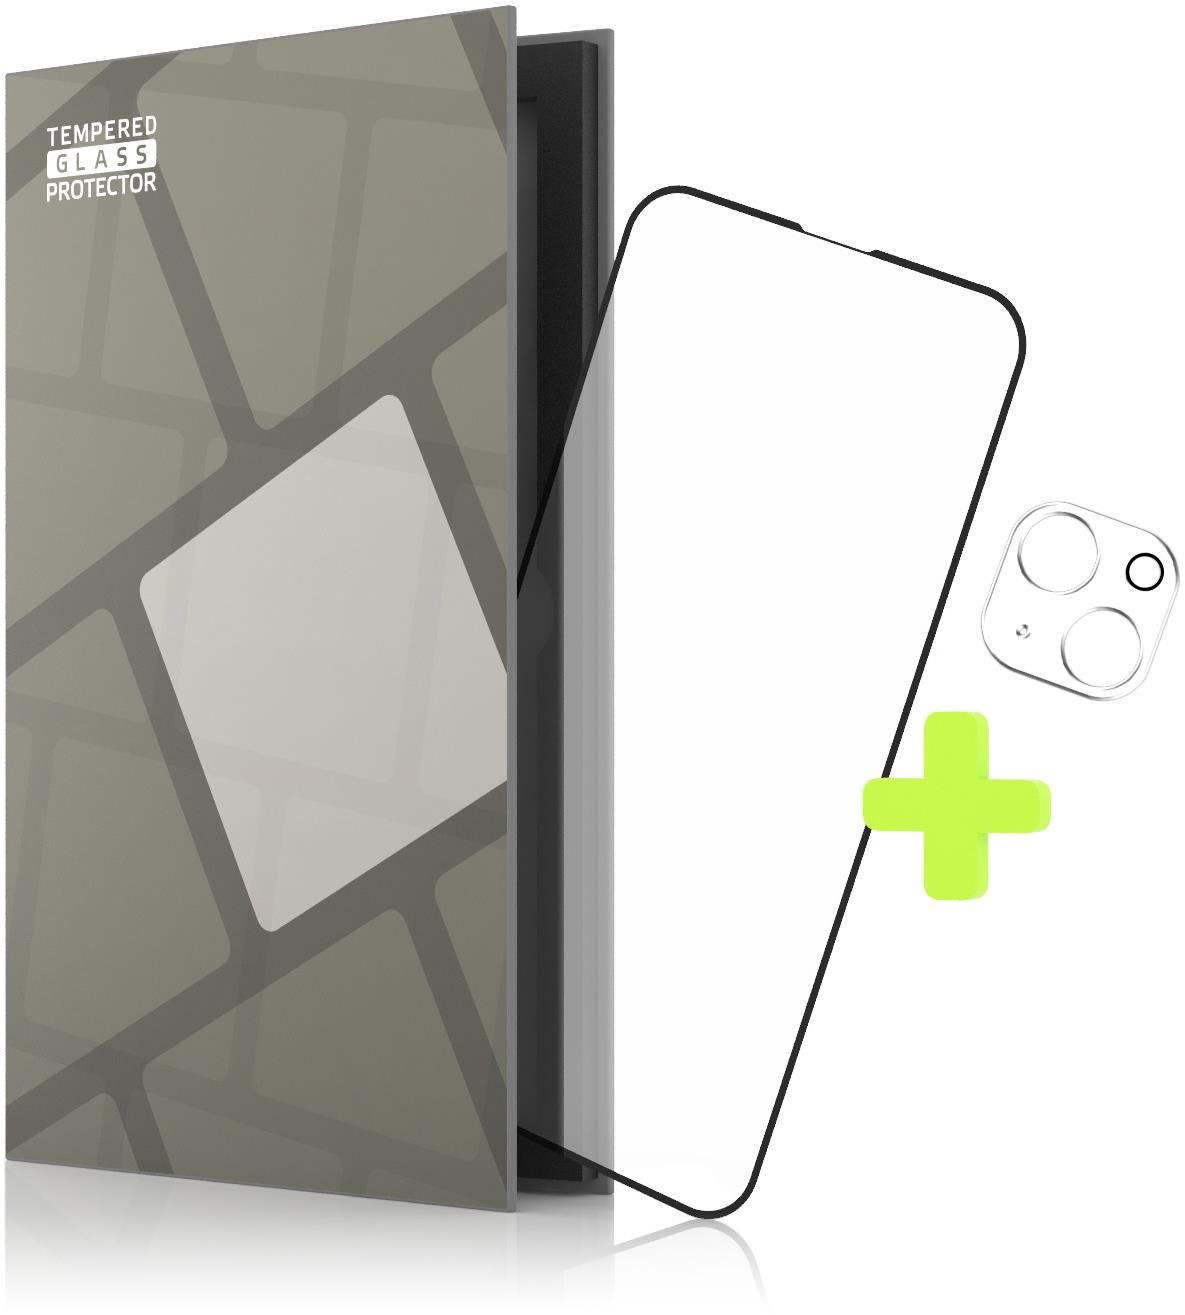 Üvegfólia Tempered Glass Protector az iPhone 13 mini készülékhez